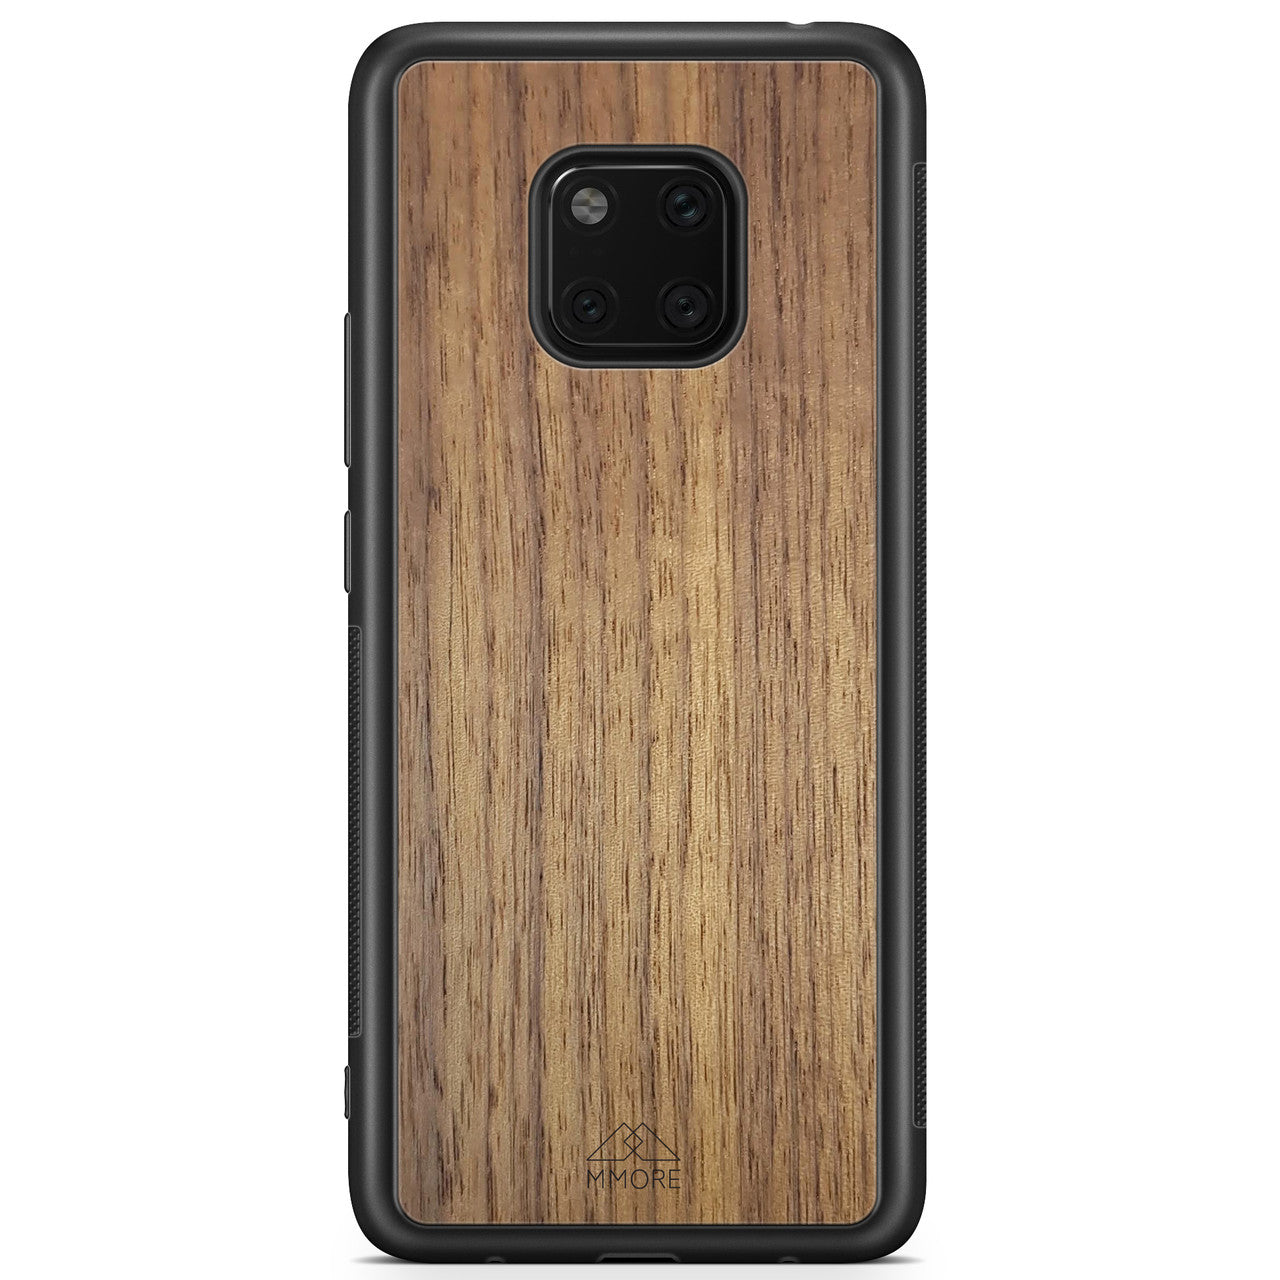 Custodia per telefono in vero legno per Huawei Mate 20 PRO in colore nero realizzata in legno di noce americanoCustodia per telefono in legno di noce americano per Huawei Mate 20 Pro